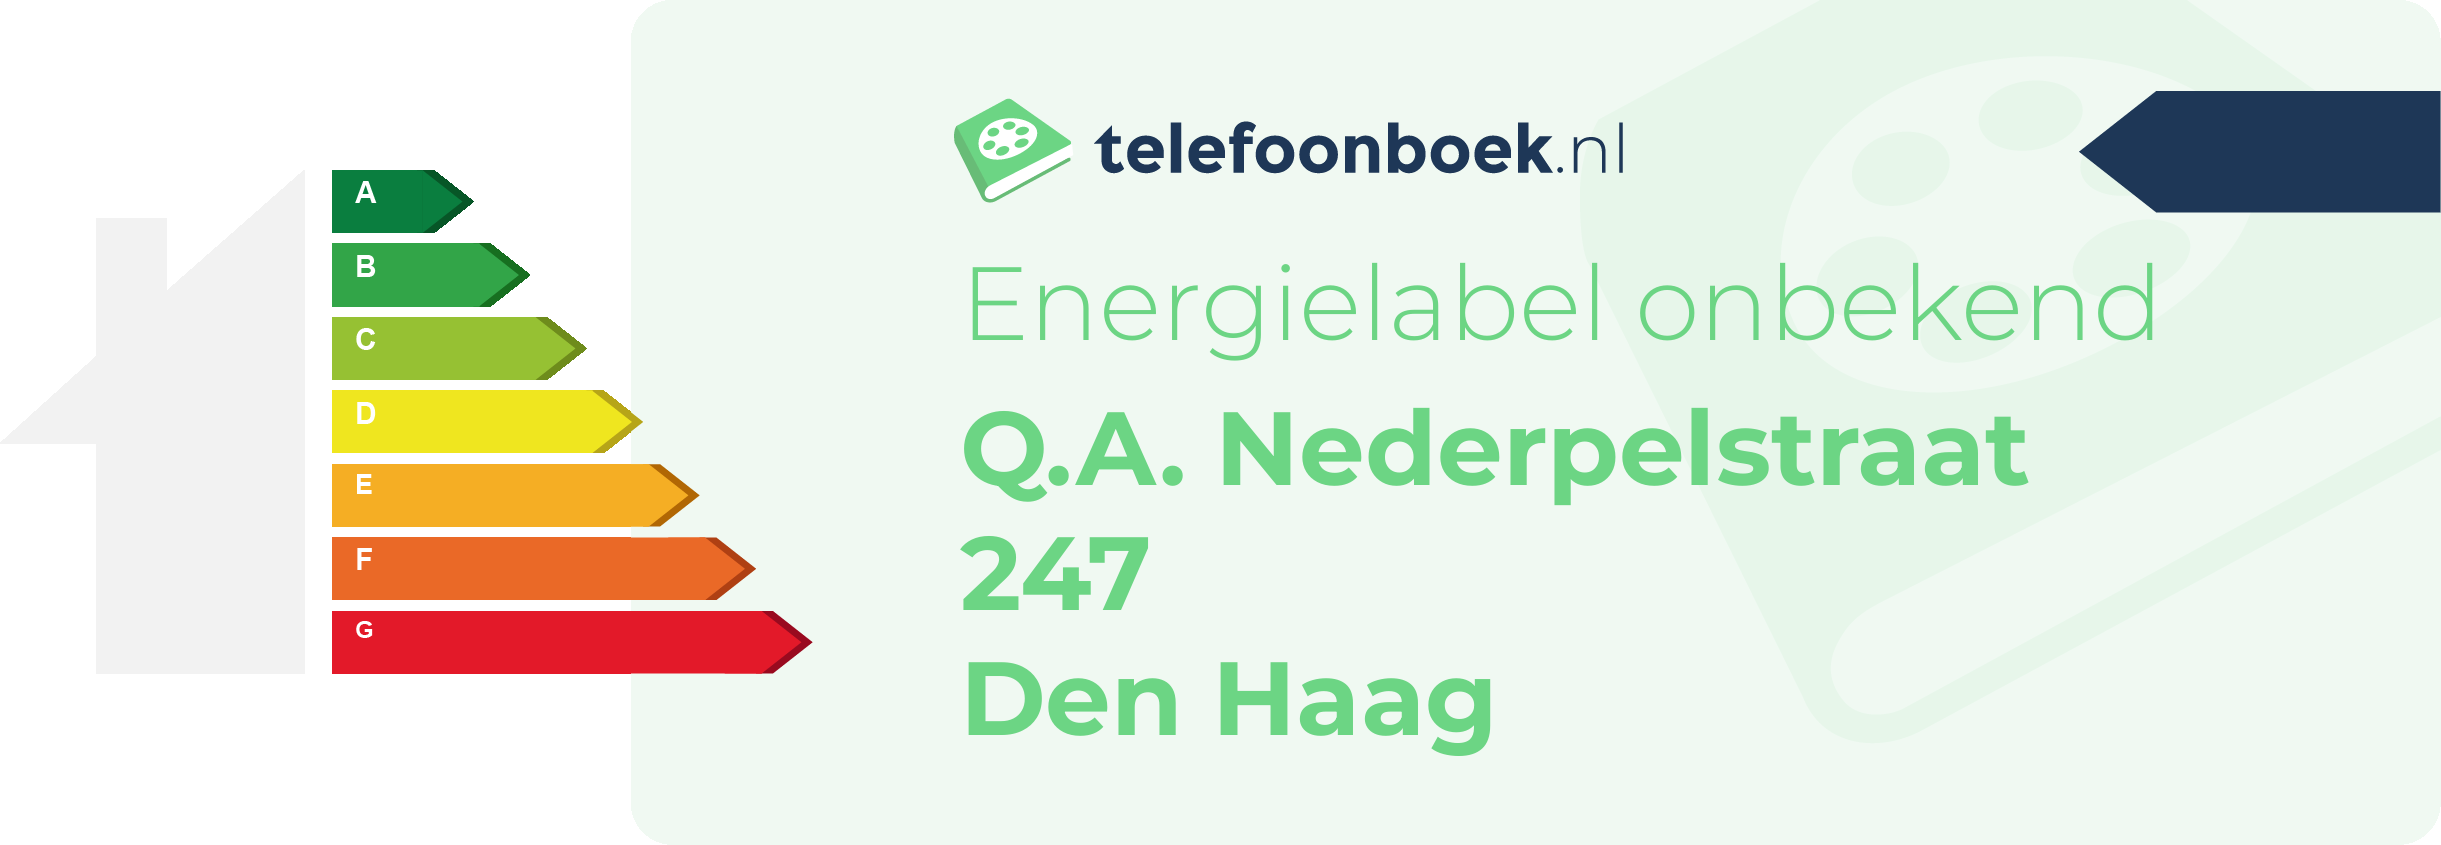 Energielabel Q.A. Nederpelstraat 247 Den Haag